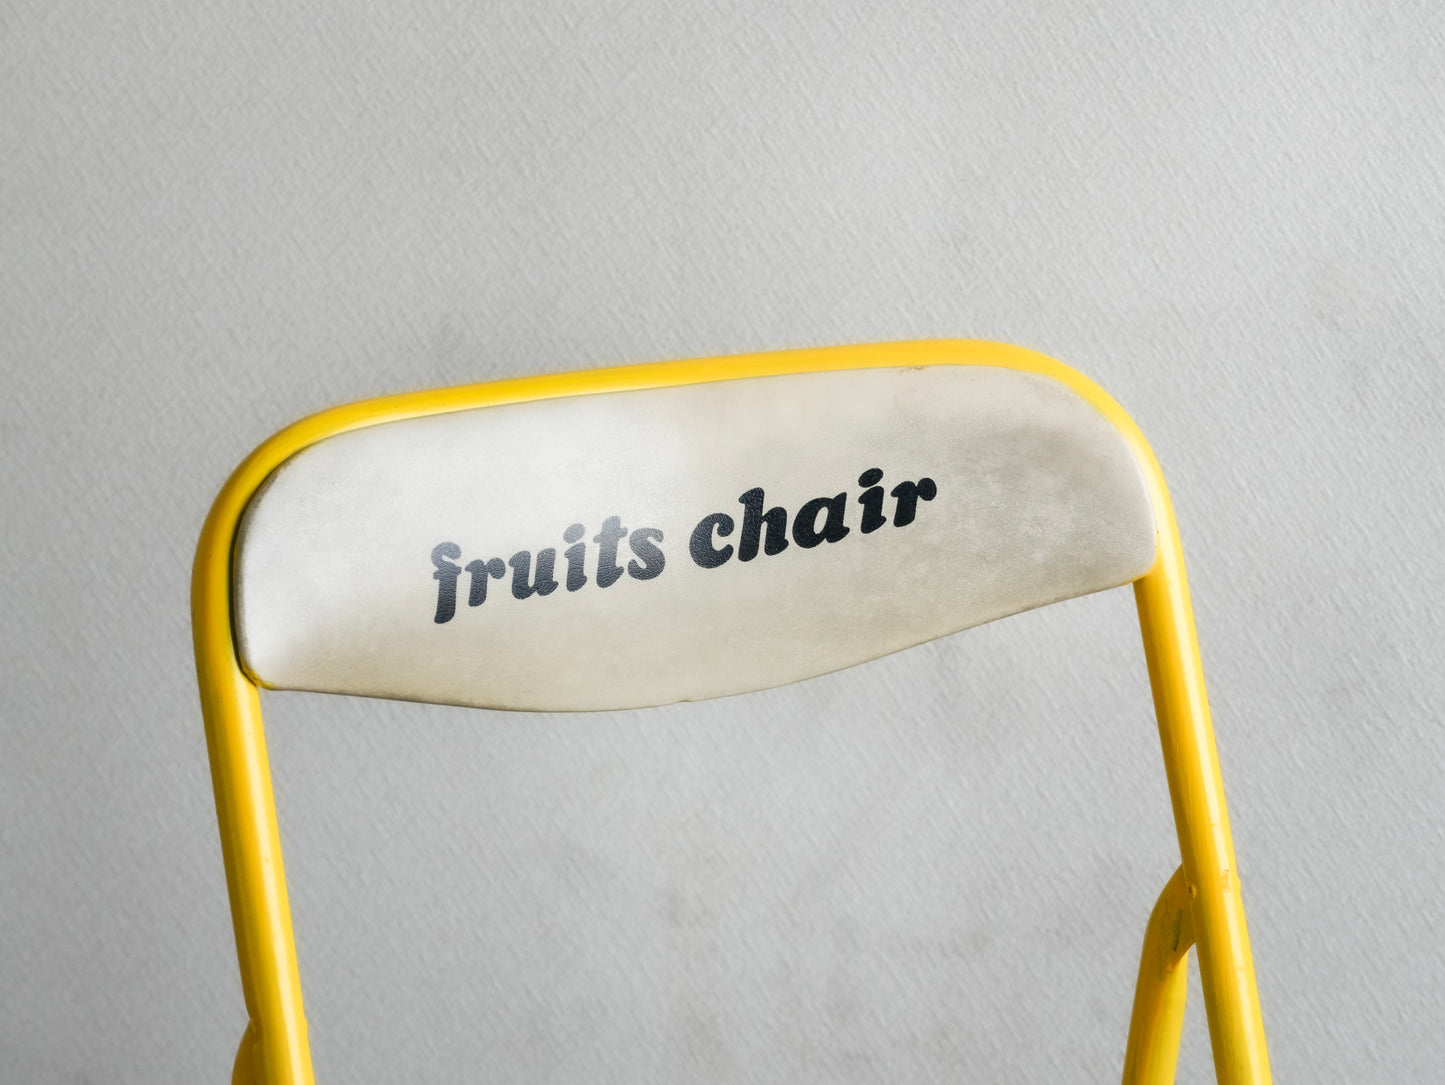 Fruits Chair